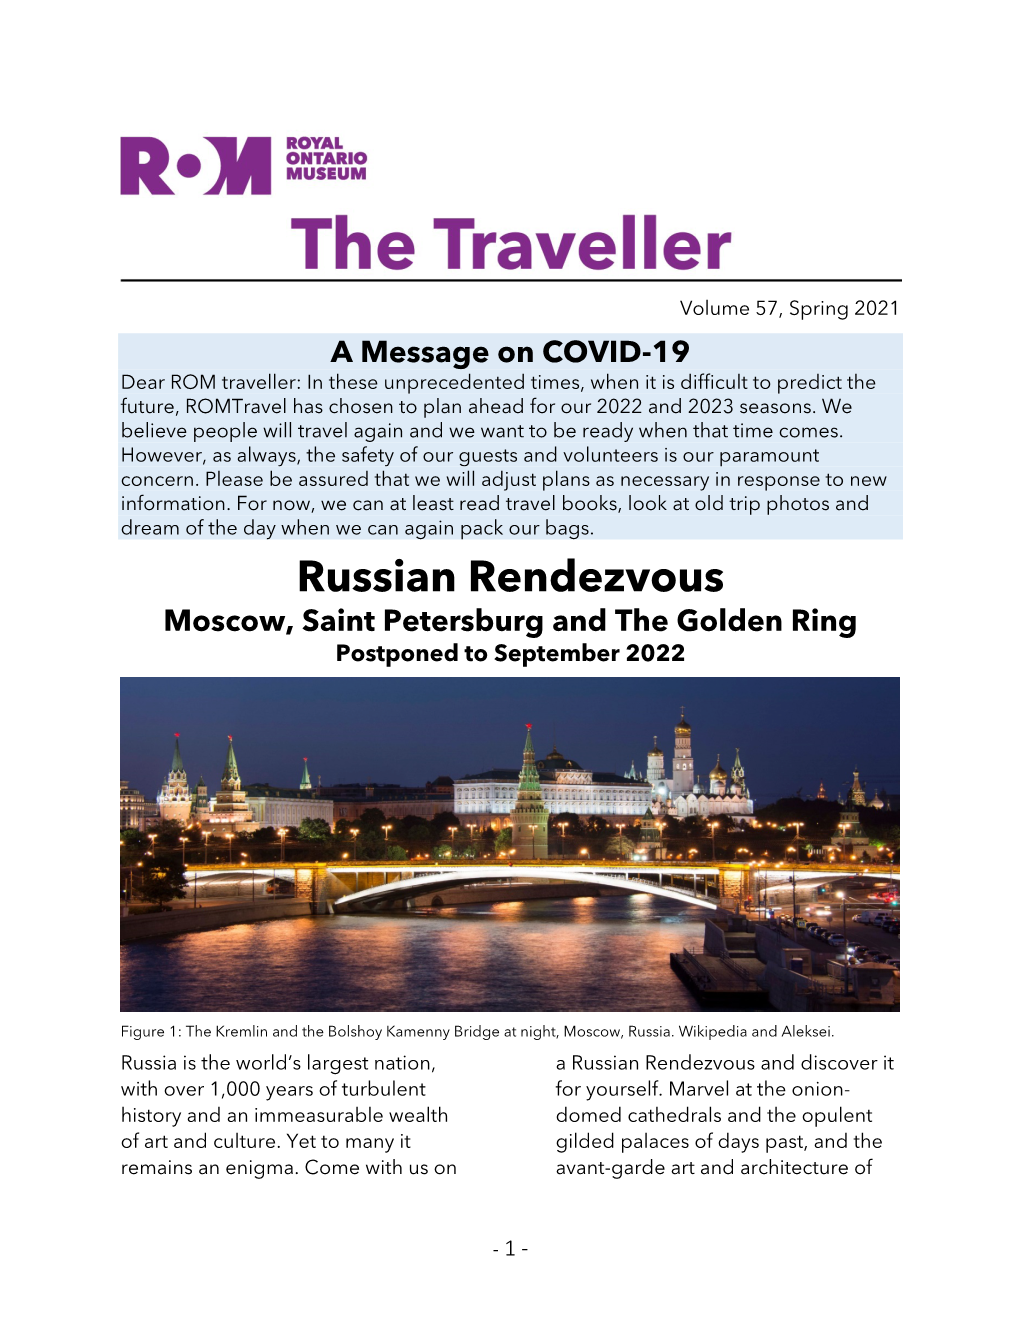 The Traveller Newsletter